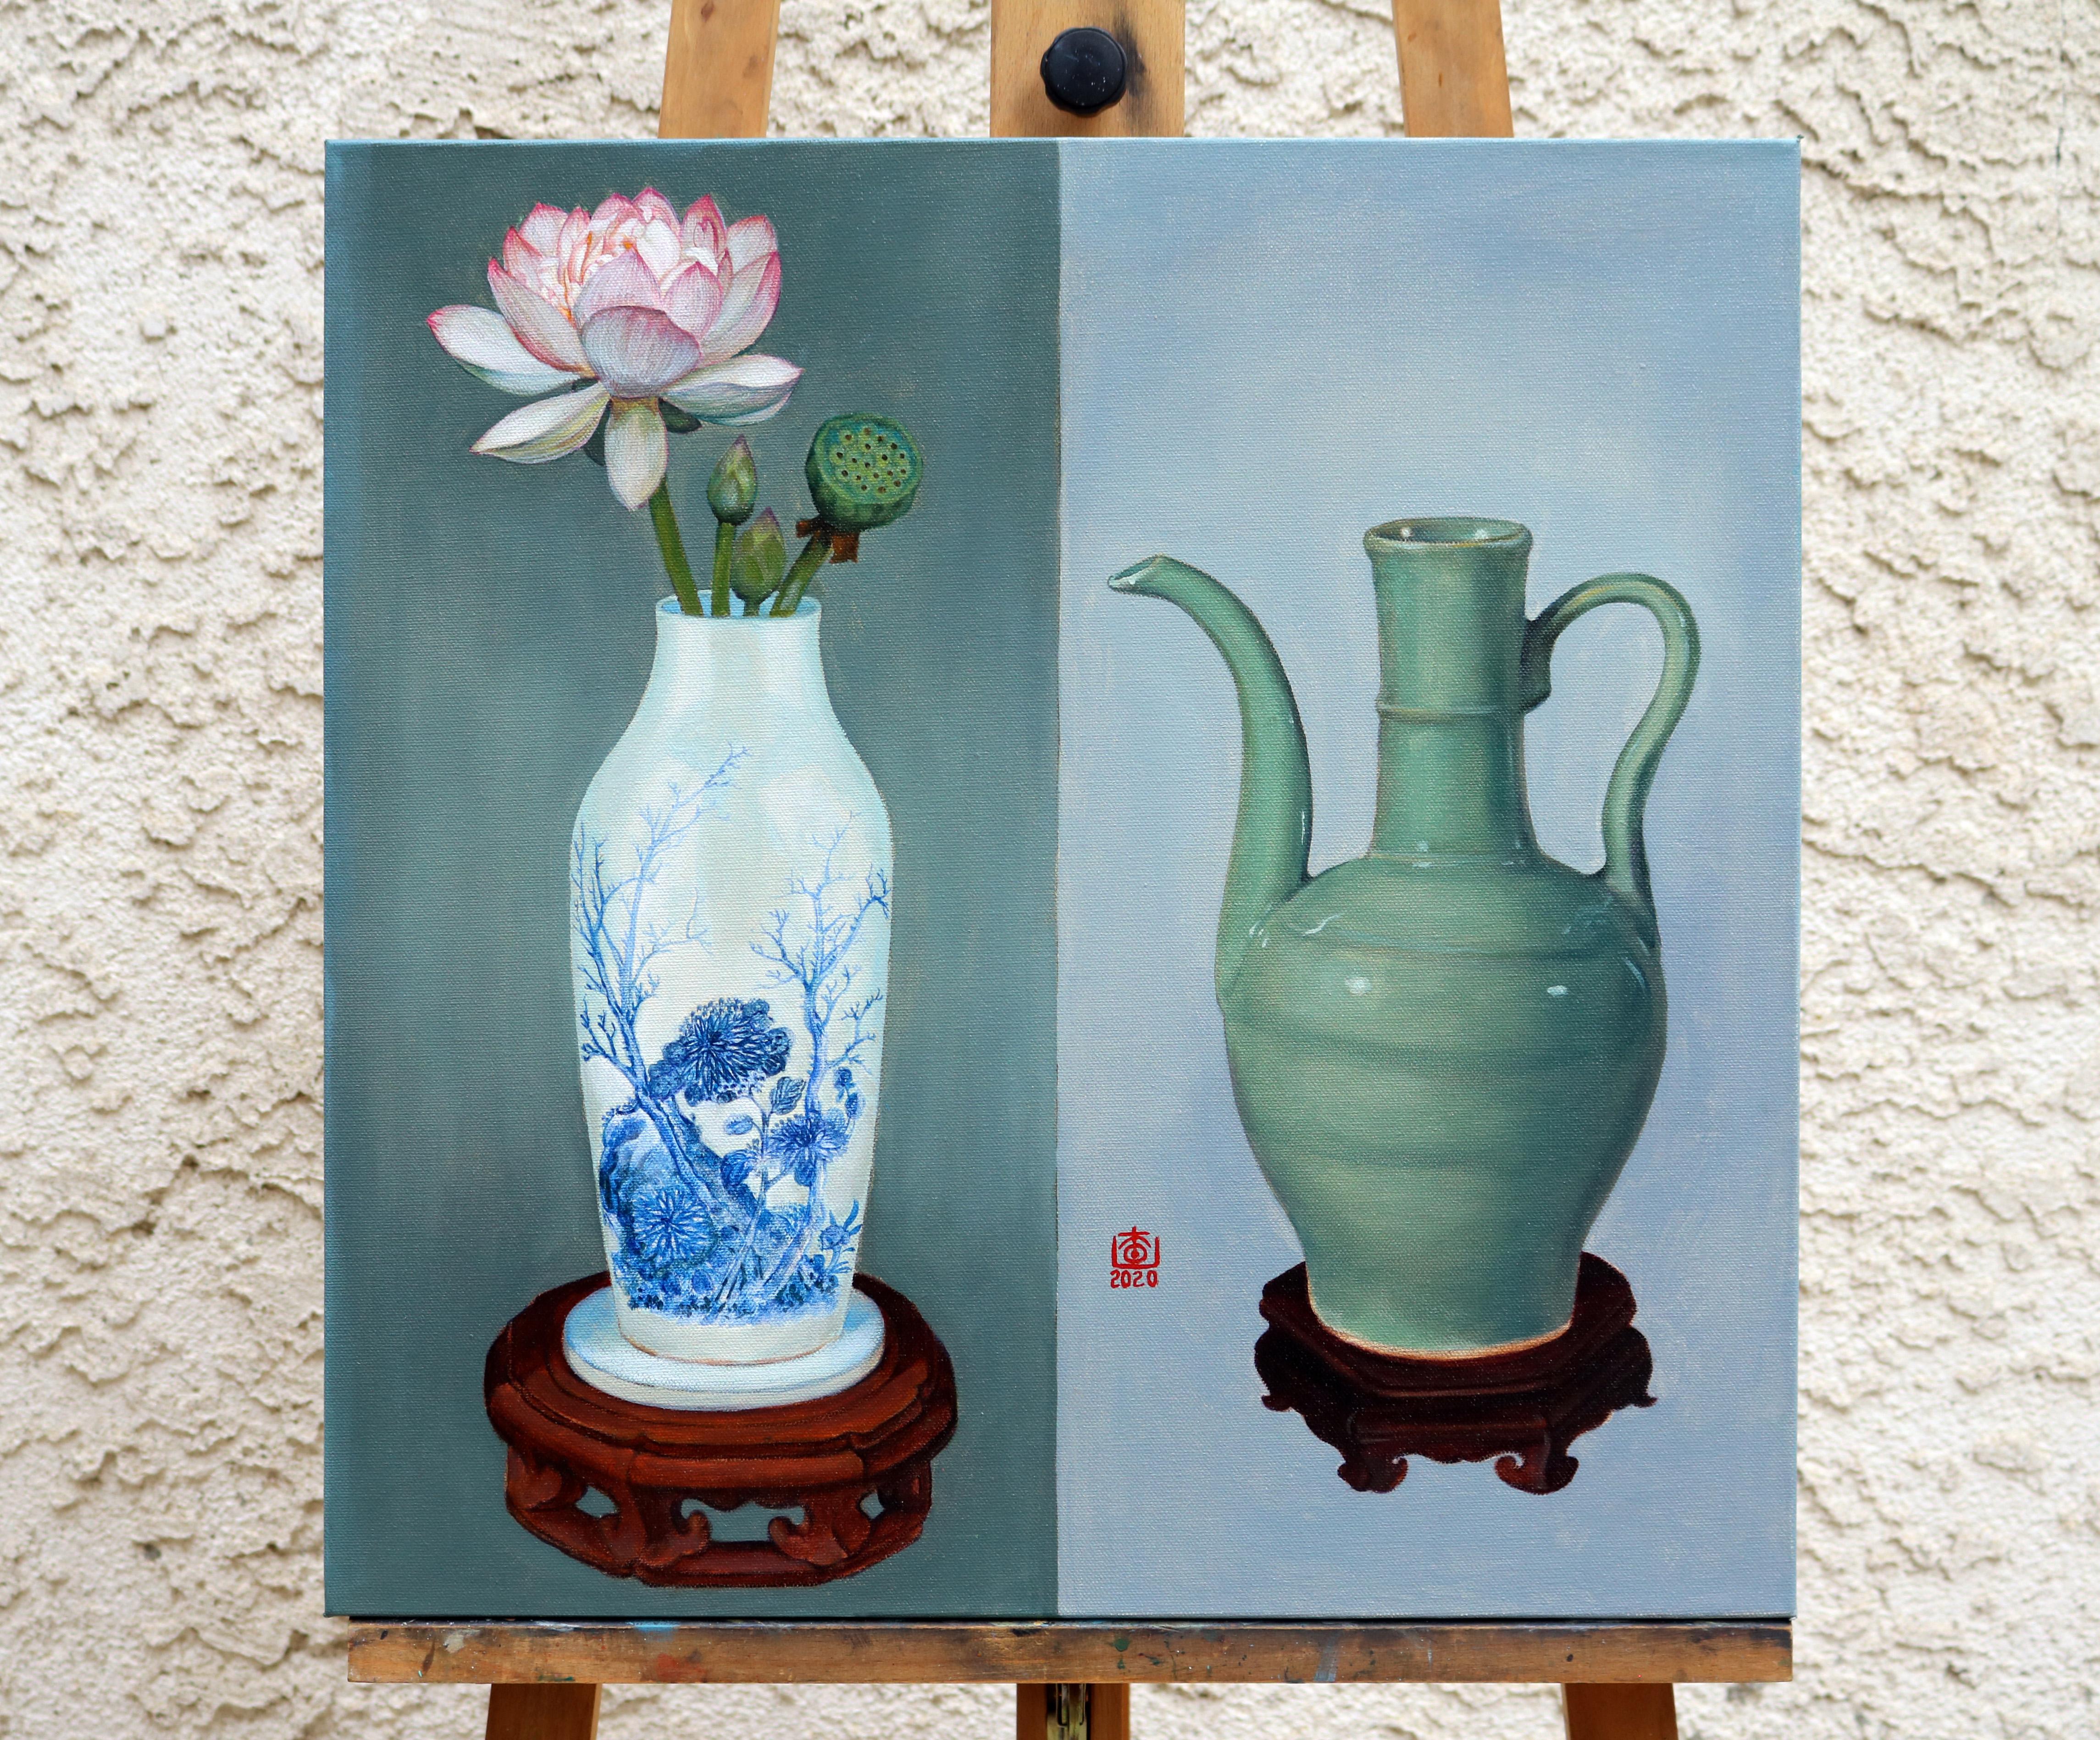 <p>Commentaires de l'artiste<br>Deux vases chinois reposent sur un fond de différentes nuances de gris dans l'œuvre de l'artiste Guigen Zha. Cette nature morte fait référence à des reliques culturelles de la dynastie Song en Chine. Le pichet en